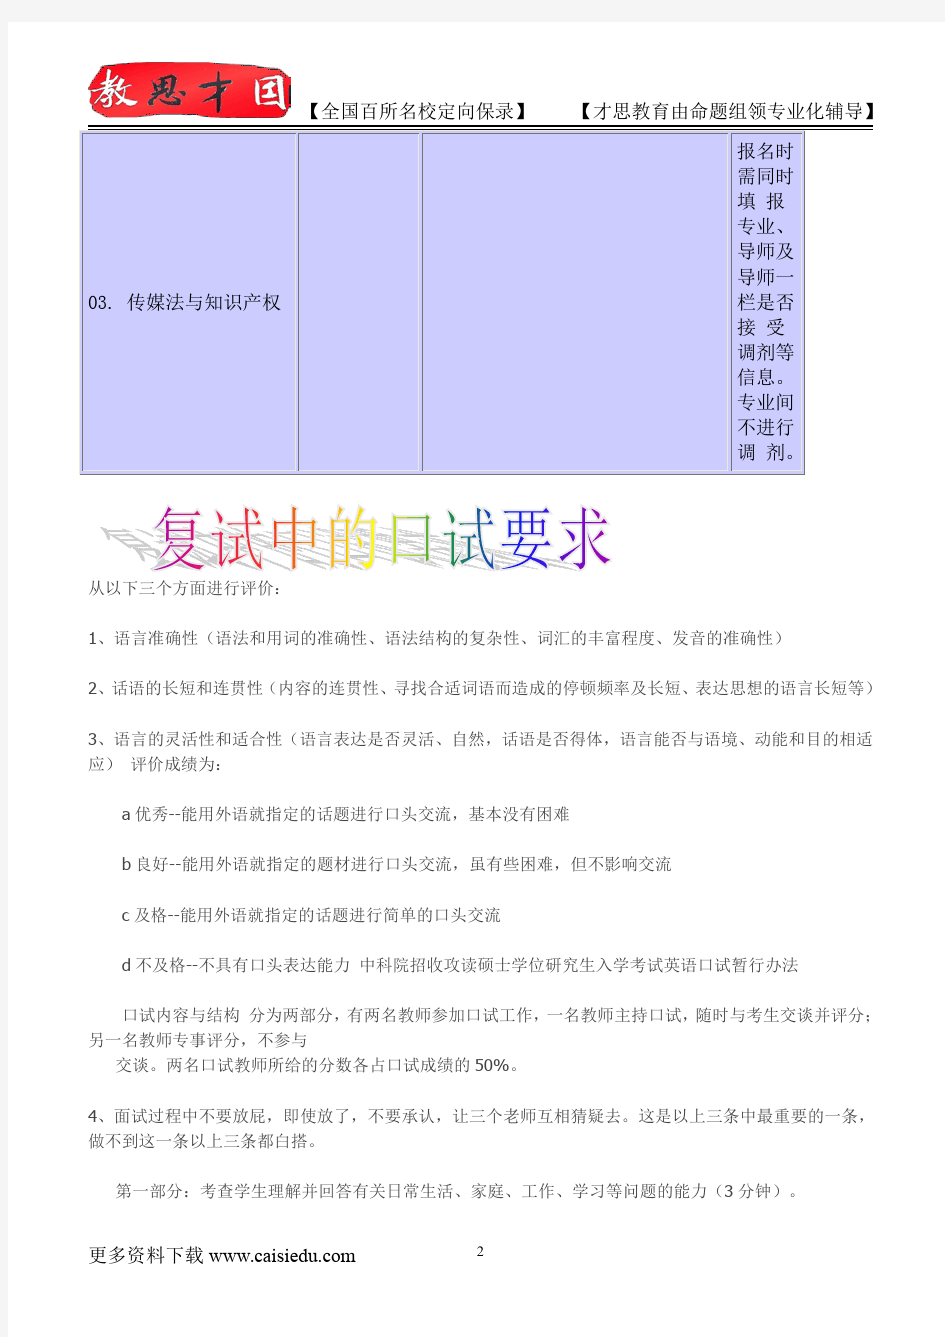 北京大学考博知识产权法专业介绍,考博真题,真题解析